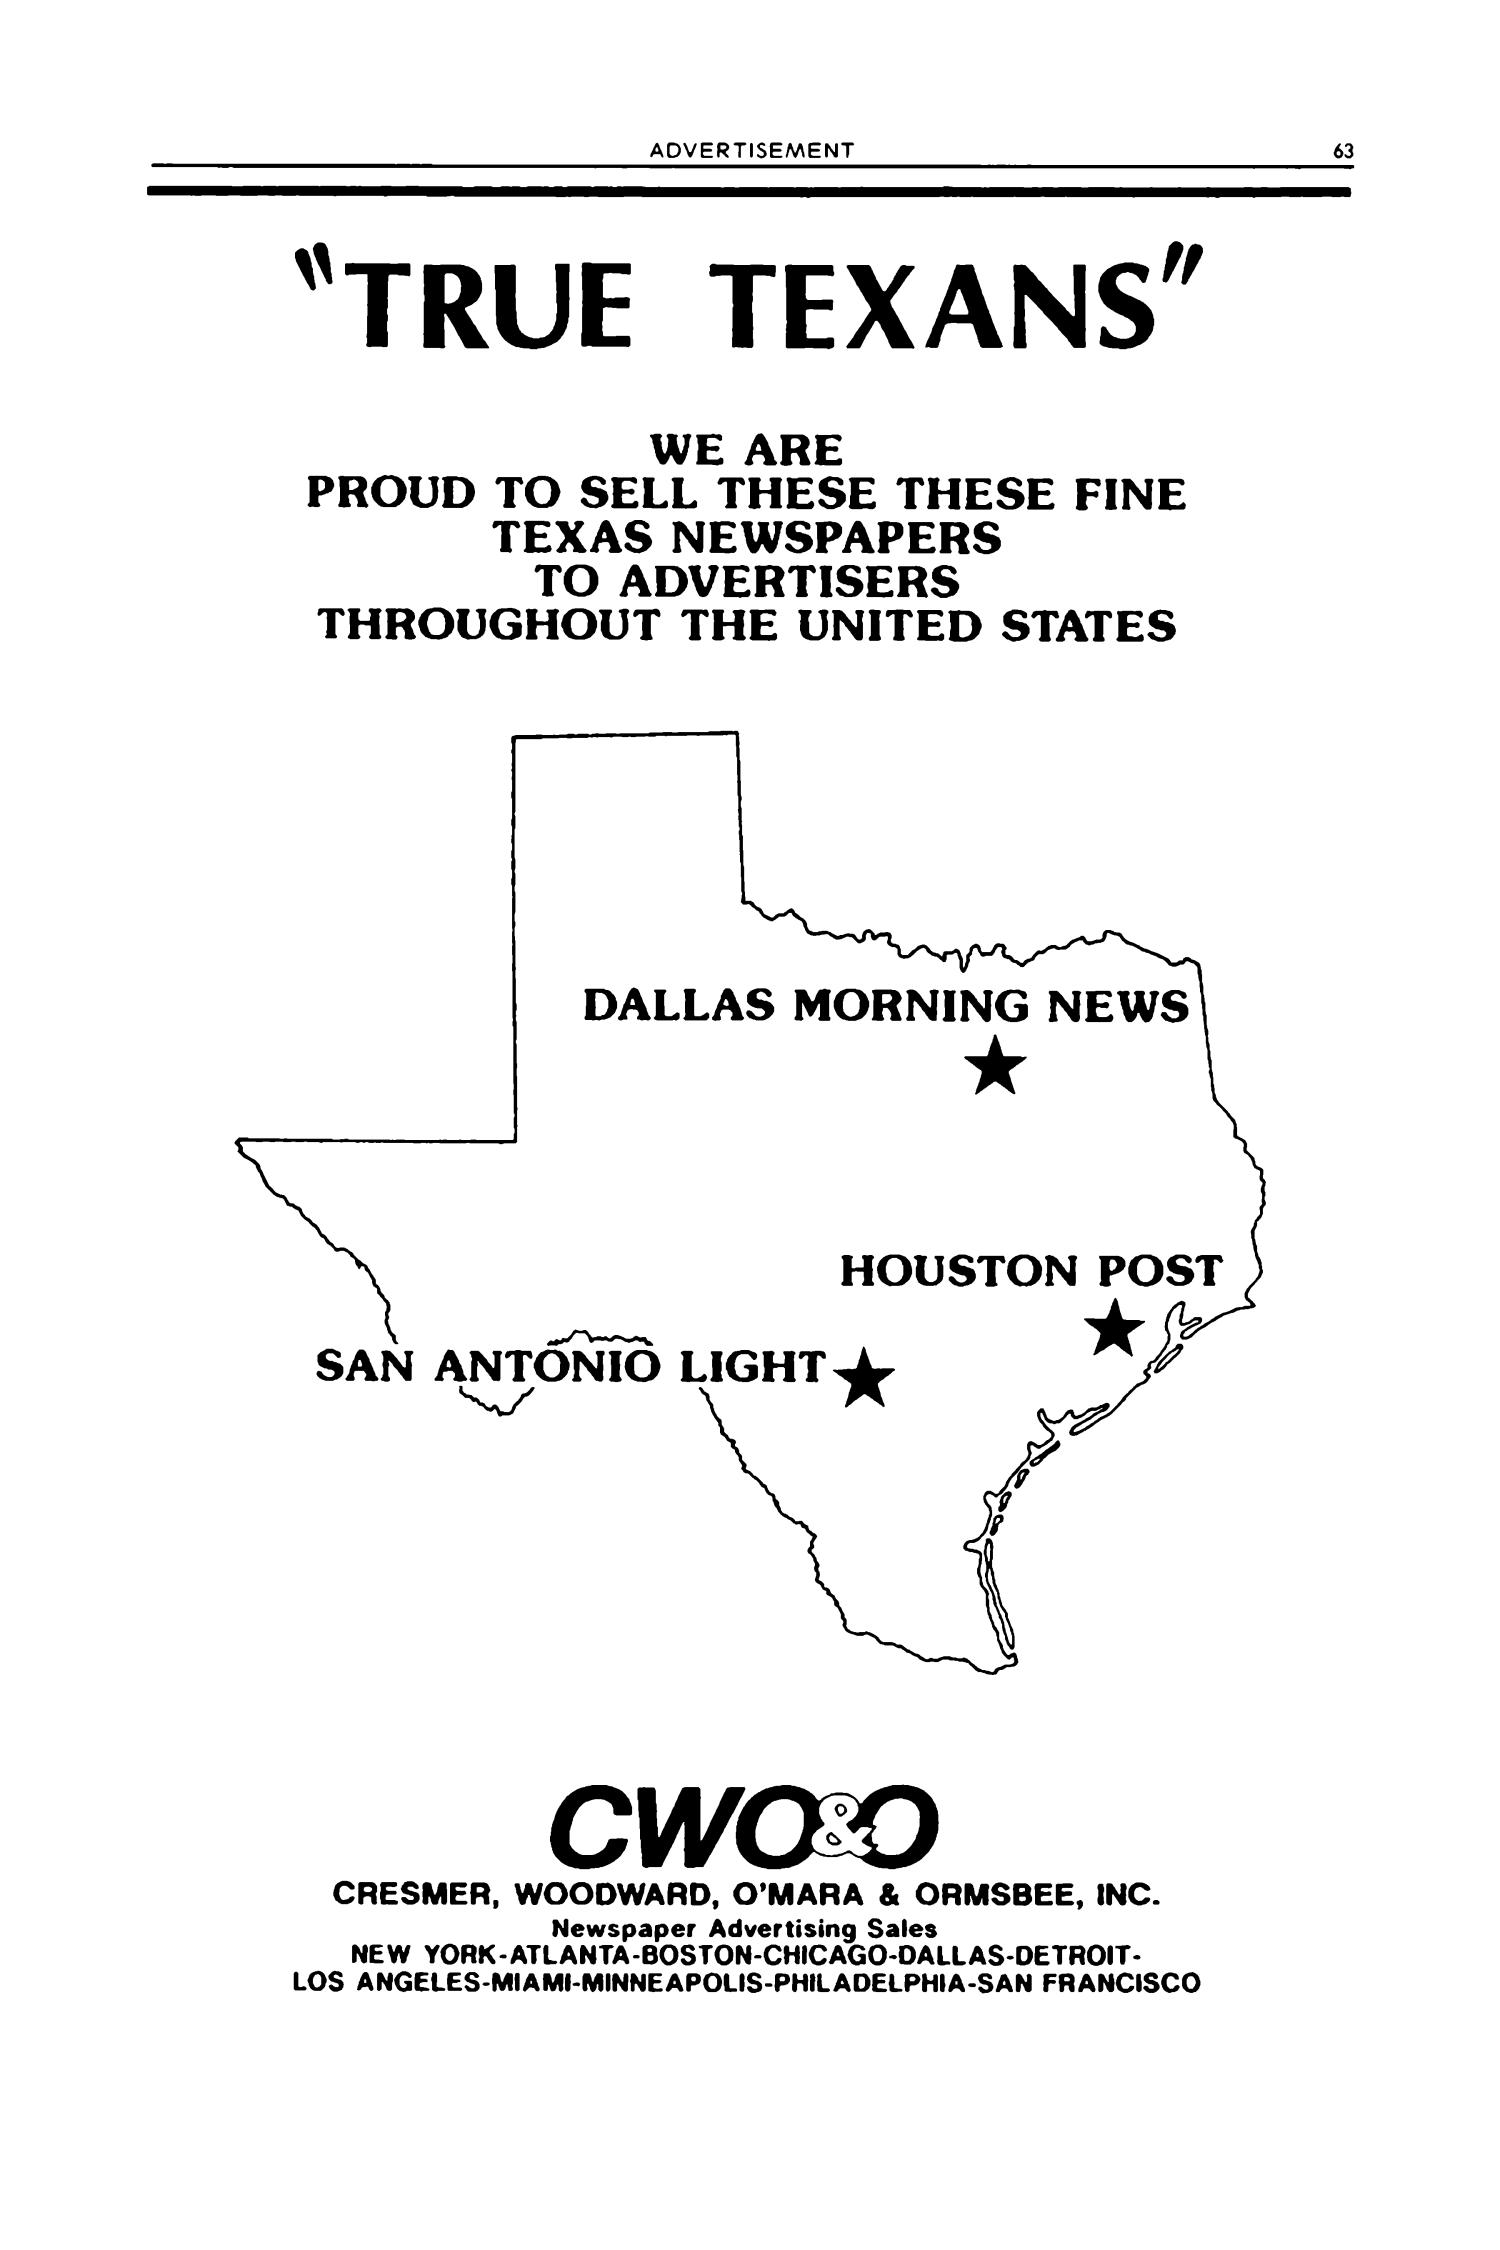 Texas Almanac, 1992-1993
                                                
                                                    63
                                                